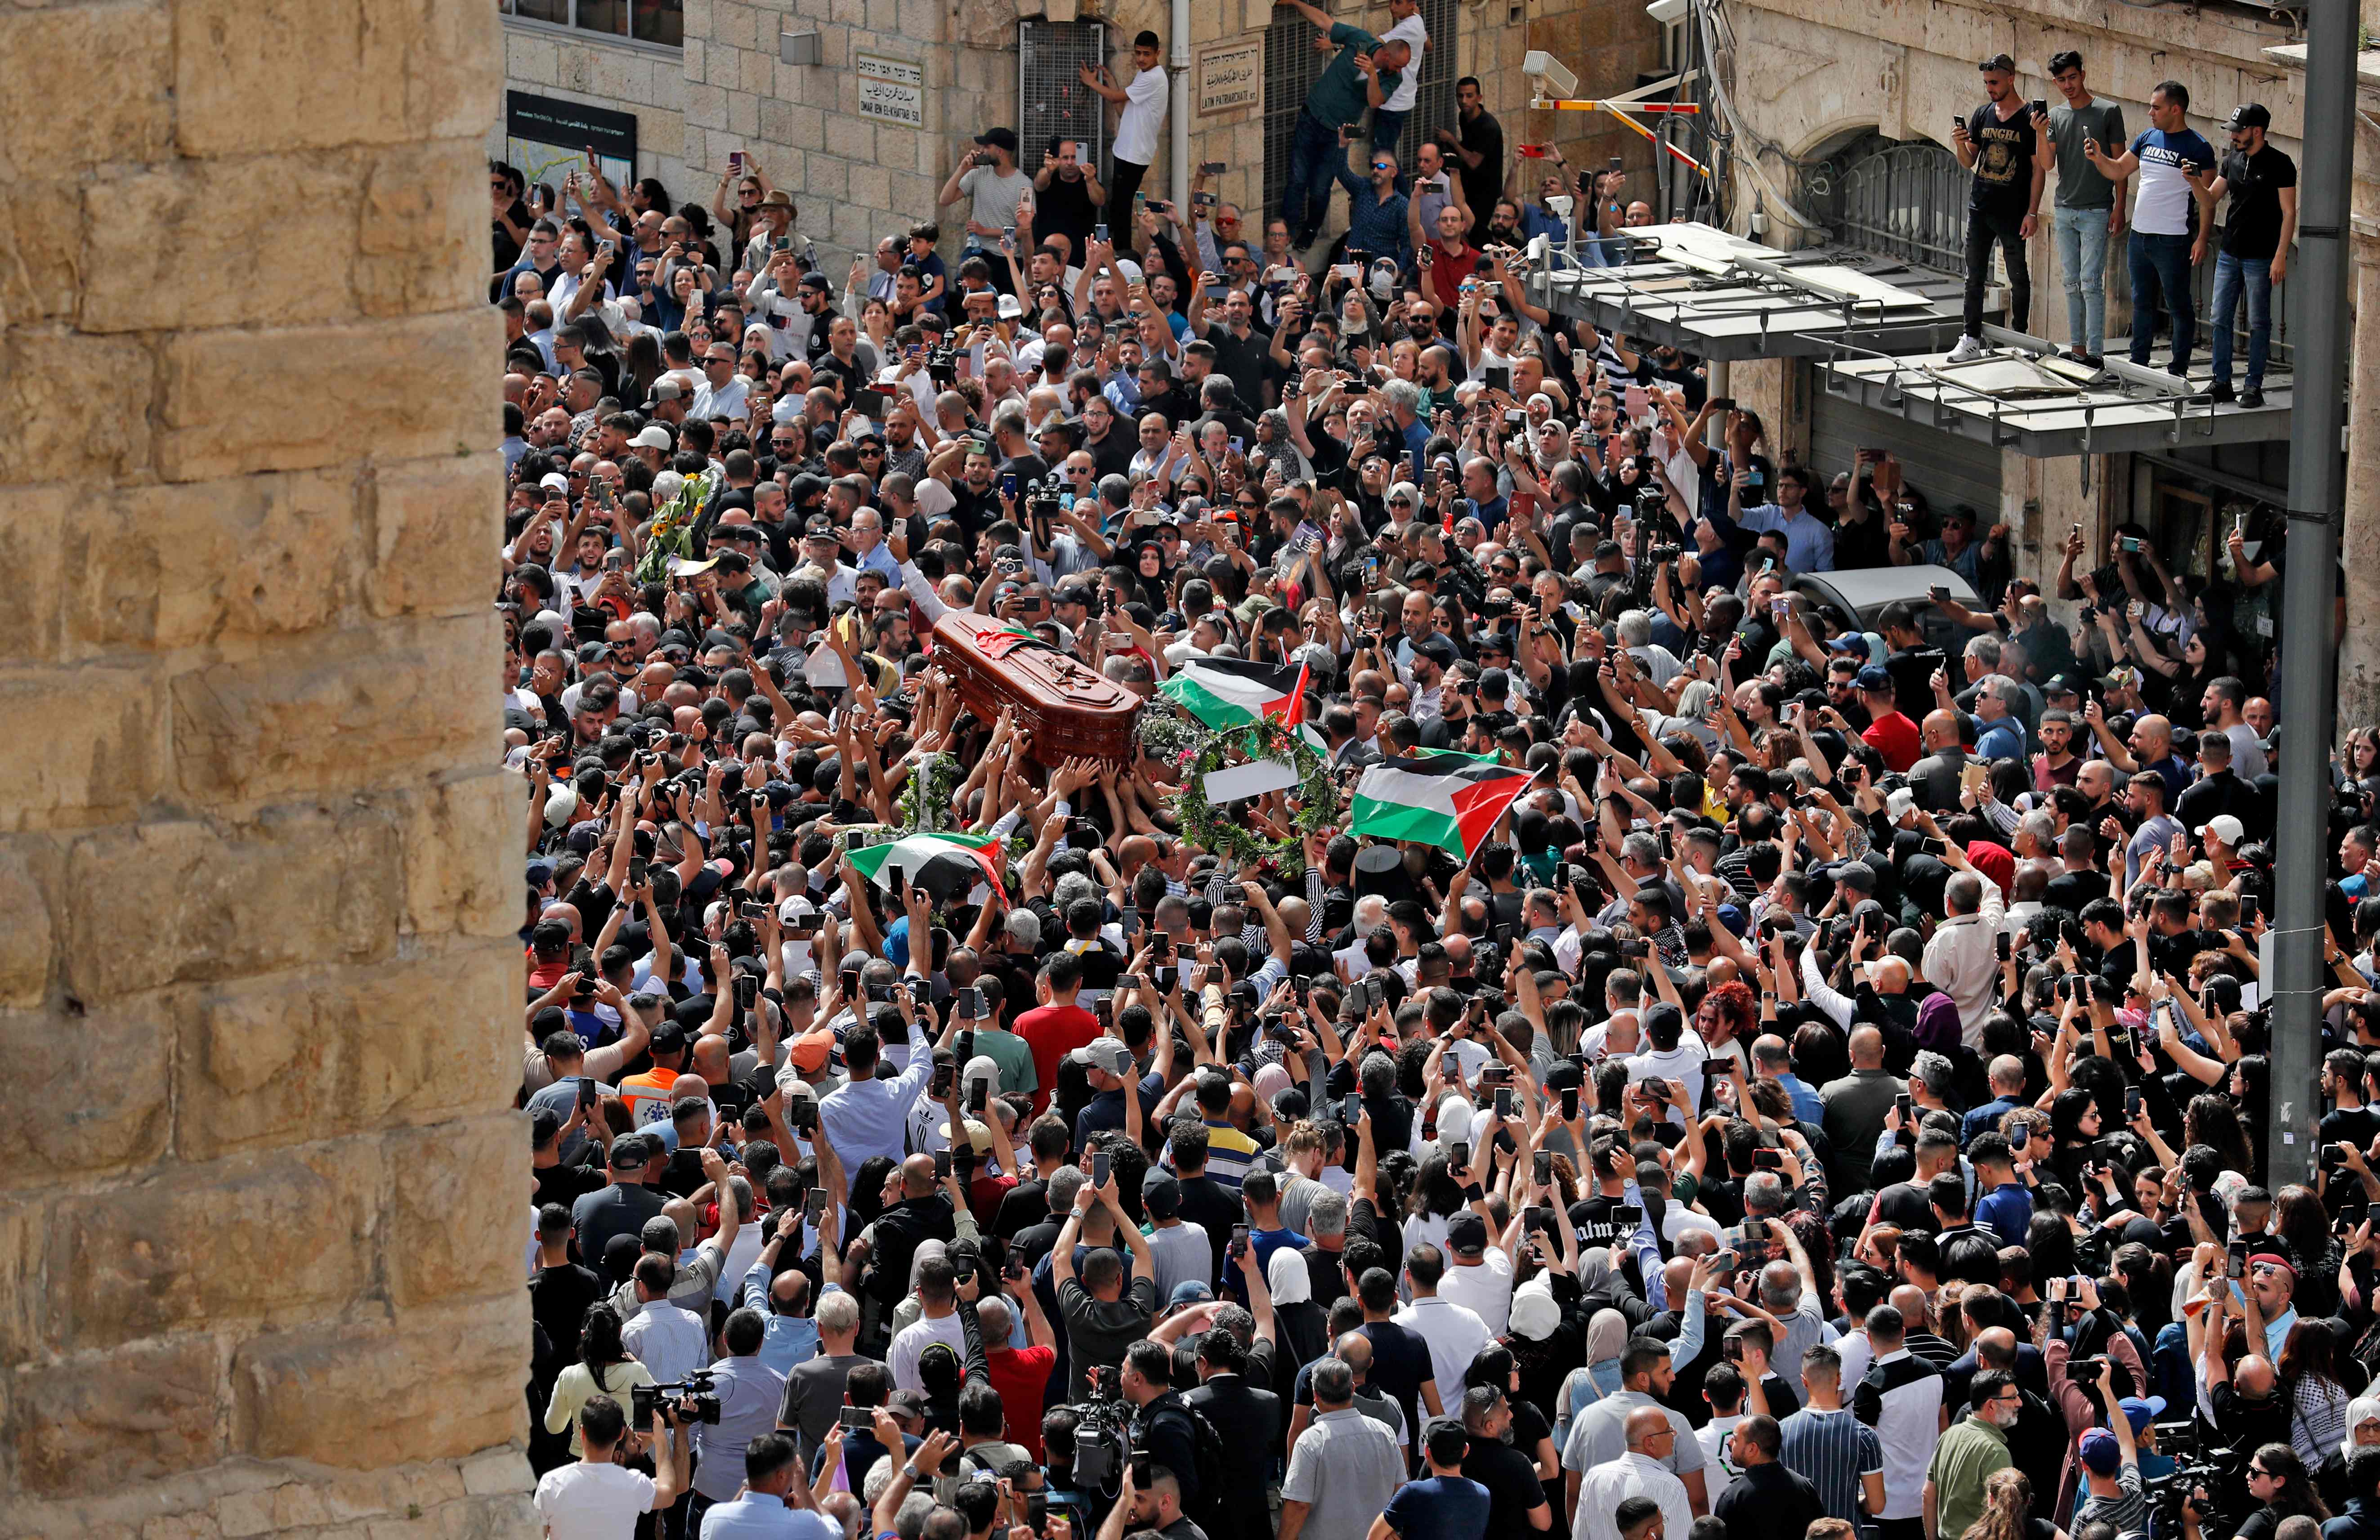 تشييع مهيب لجثمان شيرين أبو عاقلة بأعلام فلسطين في القدس